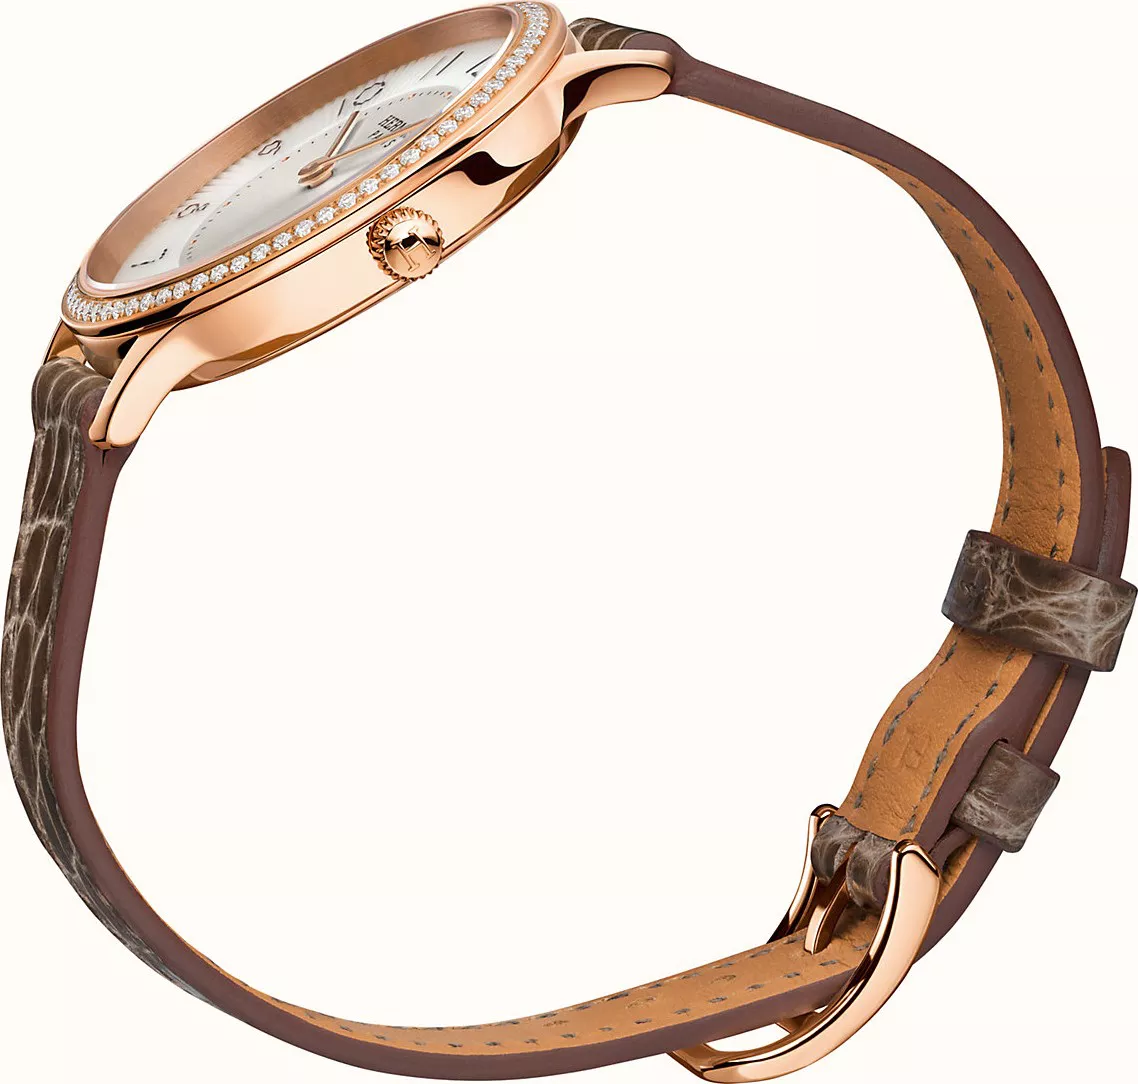 Hermes Slim W041770WW00 Diamonds Rose Gold Watch 32mm